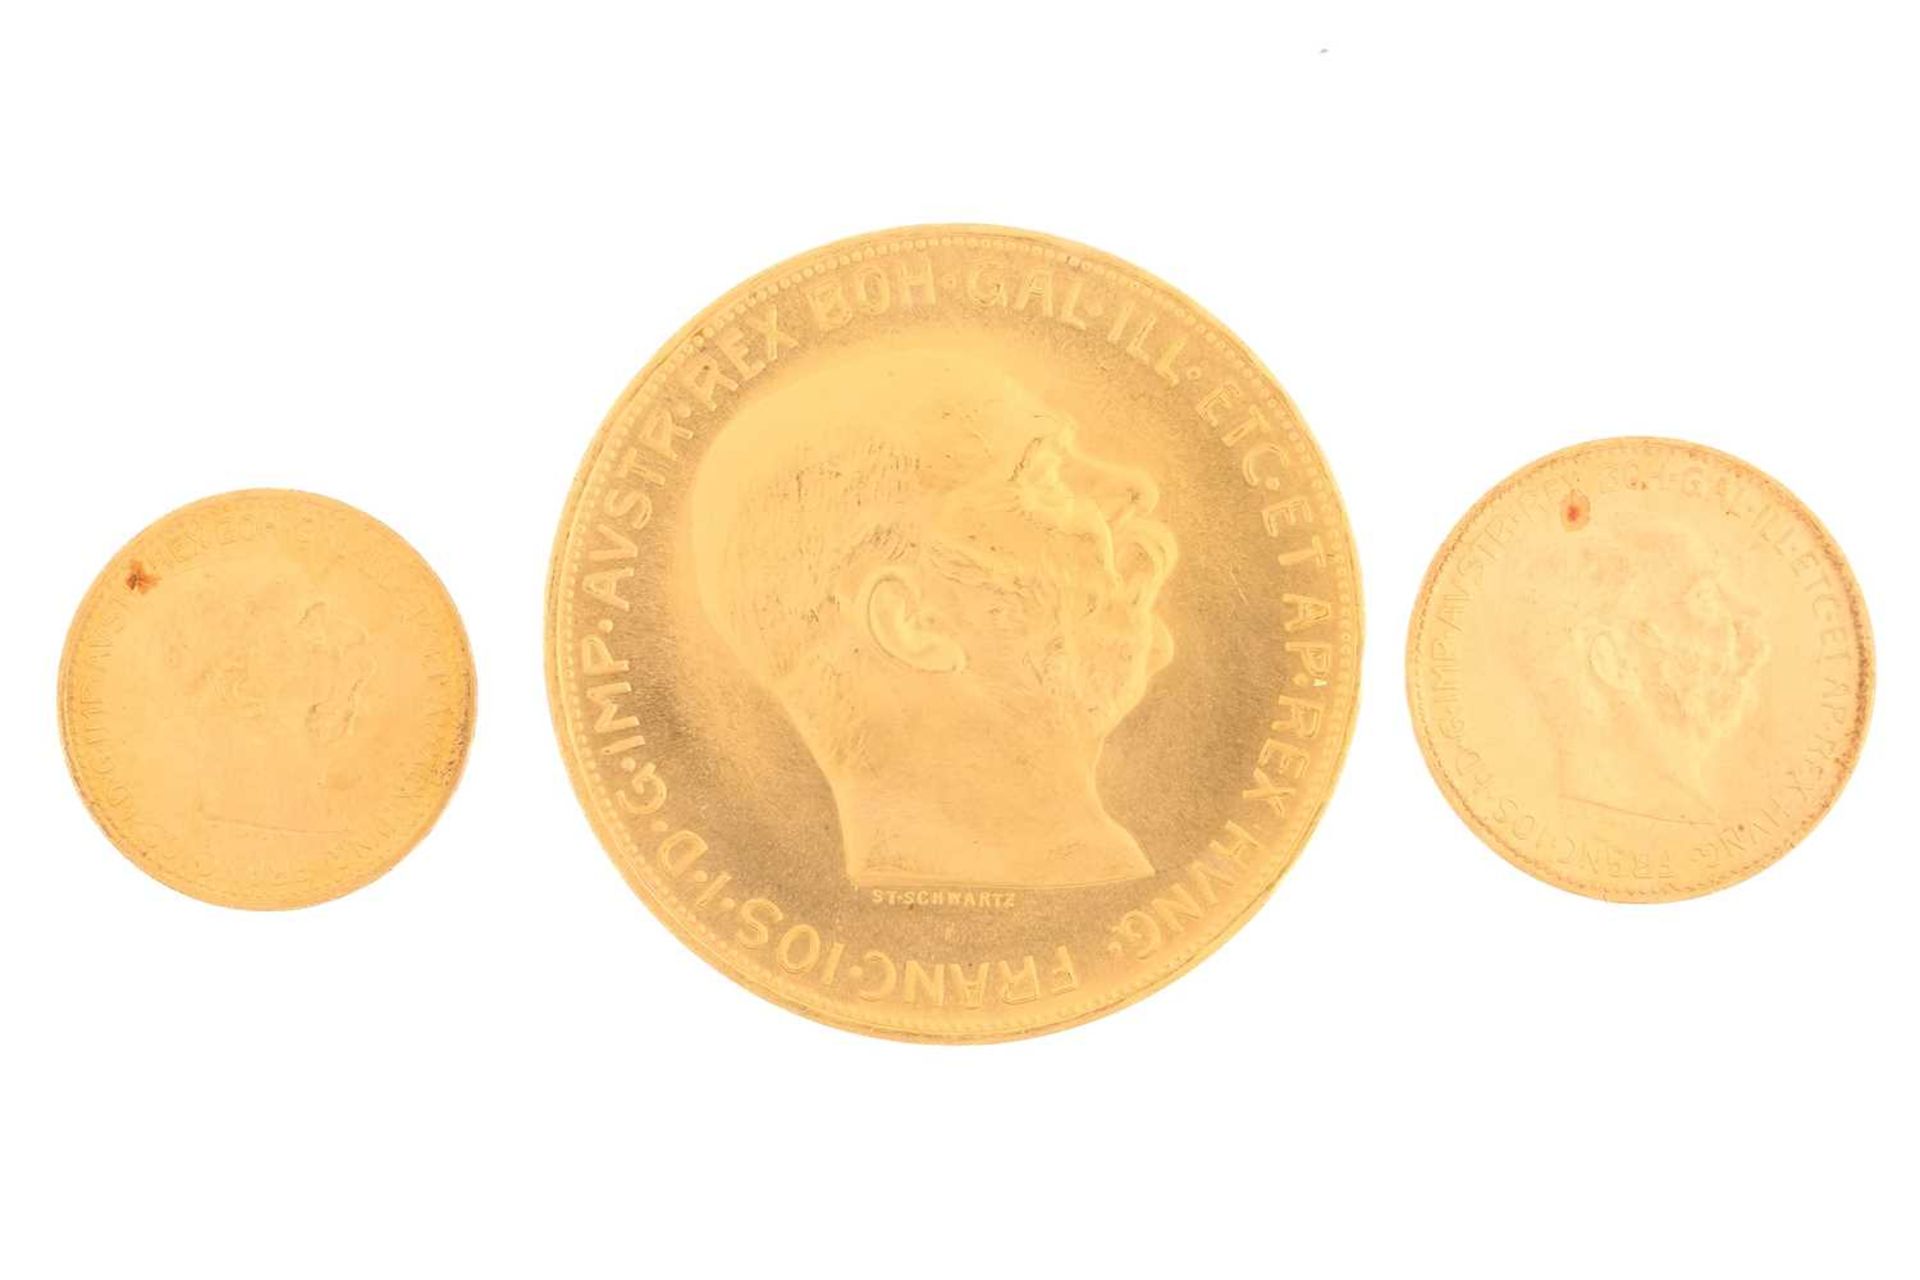 Austria - Franz Joseph I, gold 100, 20 & 10 Corona, 1915 & 1912